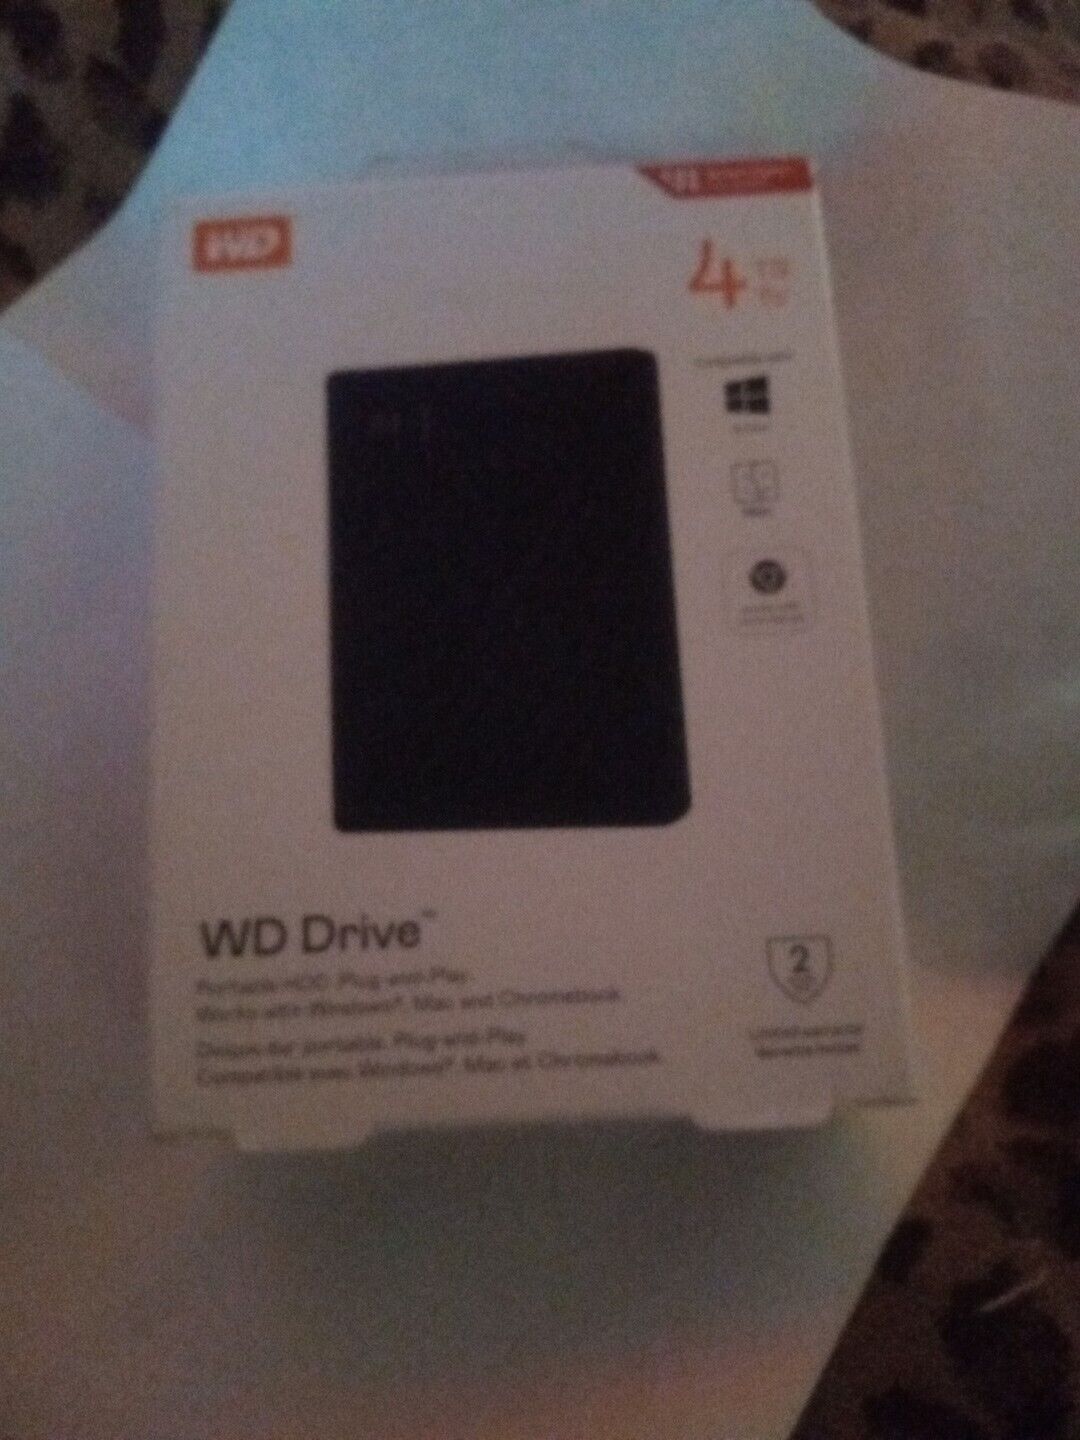 NEW Western Digital 4TB WD Drive WDBCTC0040BBL-WEWM External Hard Drive